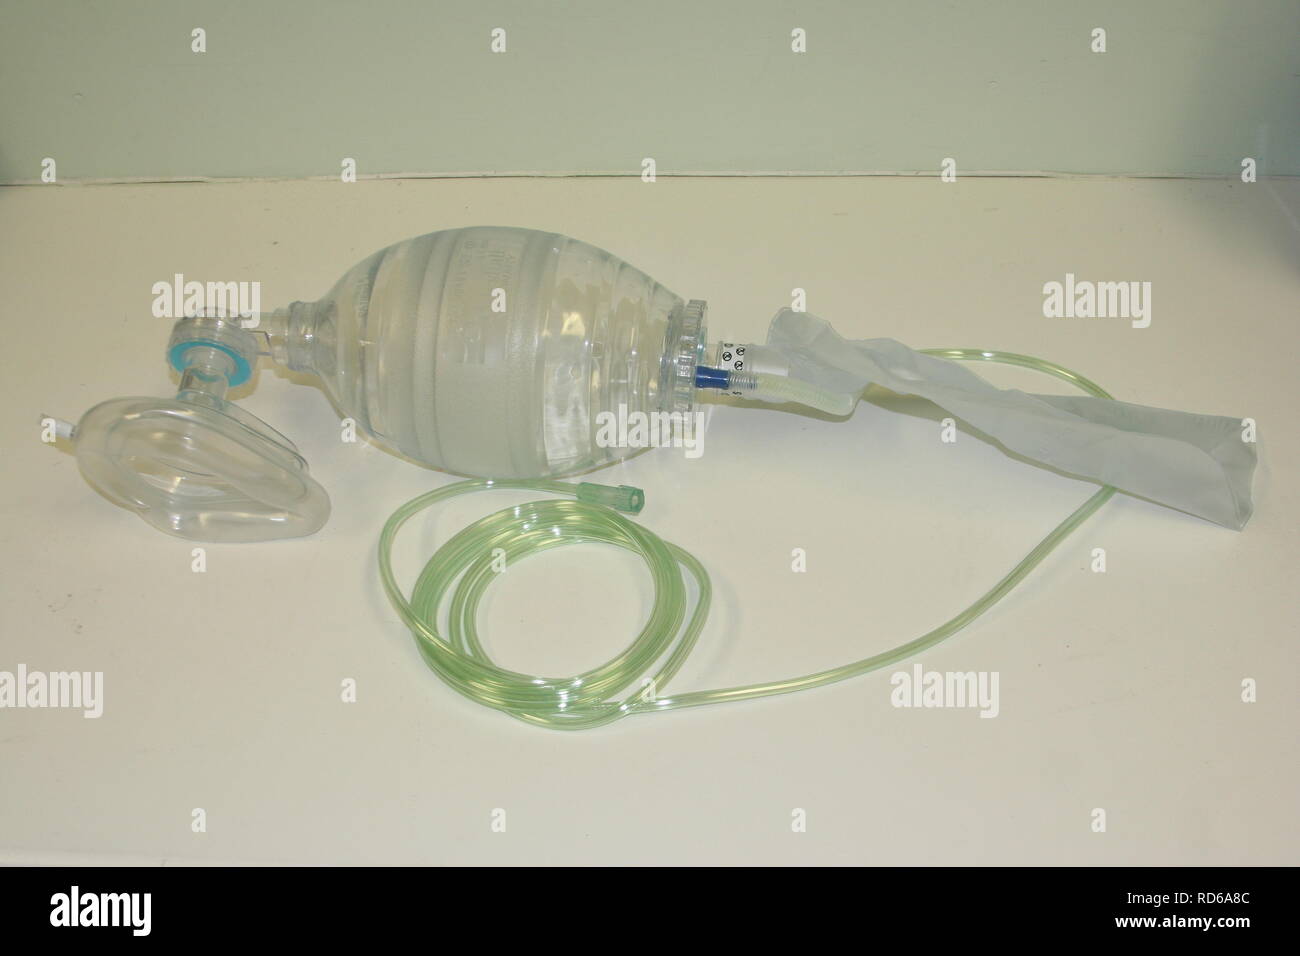 Ambu“-Beutel mit selbstaufblasender Maske und Sauerstoffbehälter und  Schlauch auf weißer Oberfläche Stockfotografie - Alamy